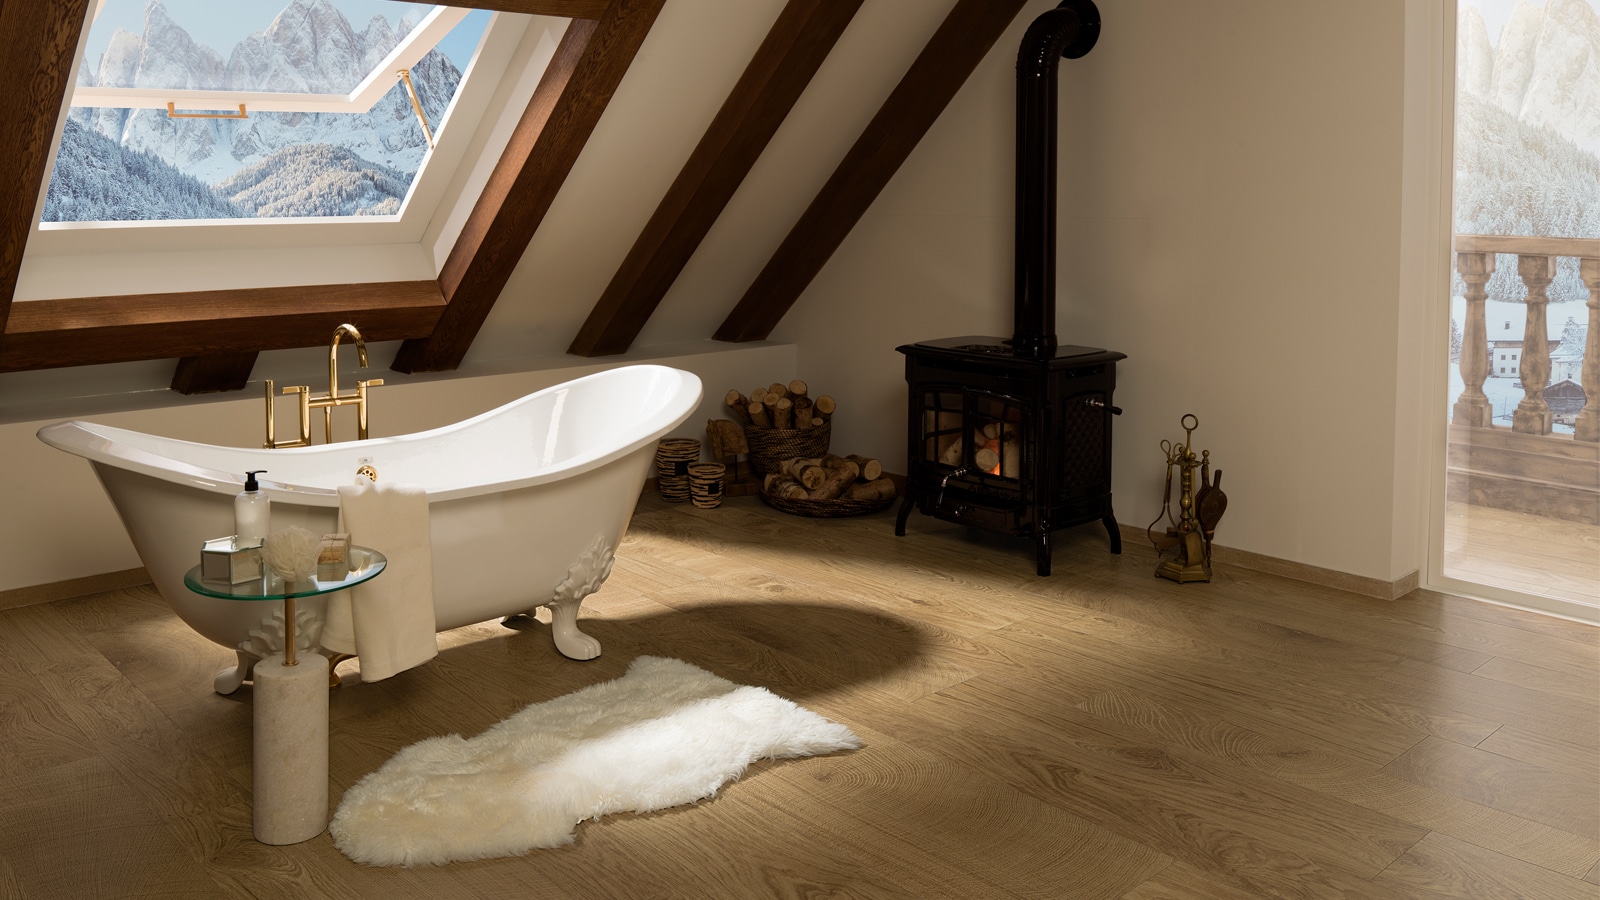 5 salles de bains élégantes et actuelles pour les amoureux du design